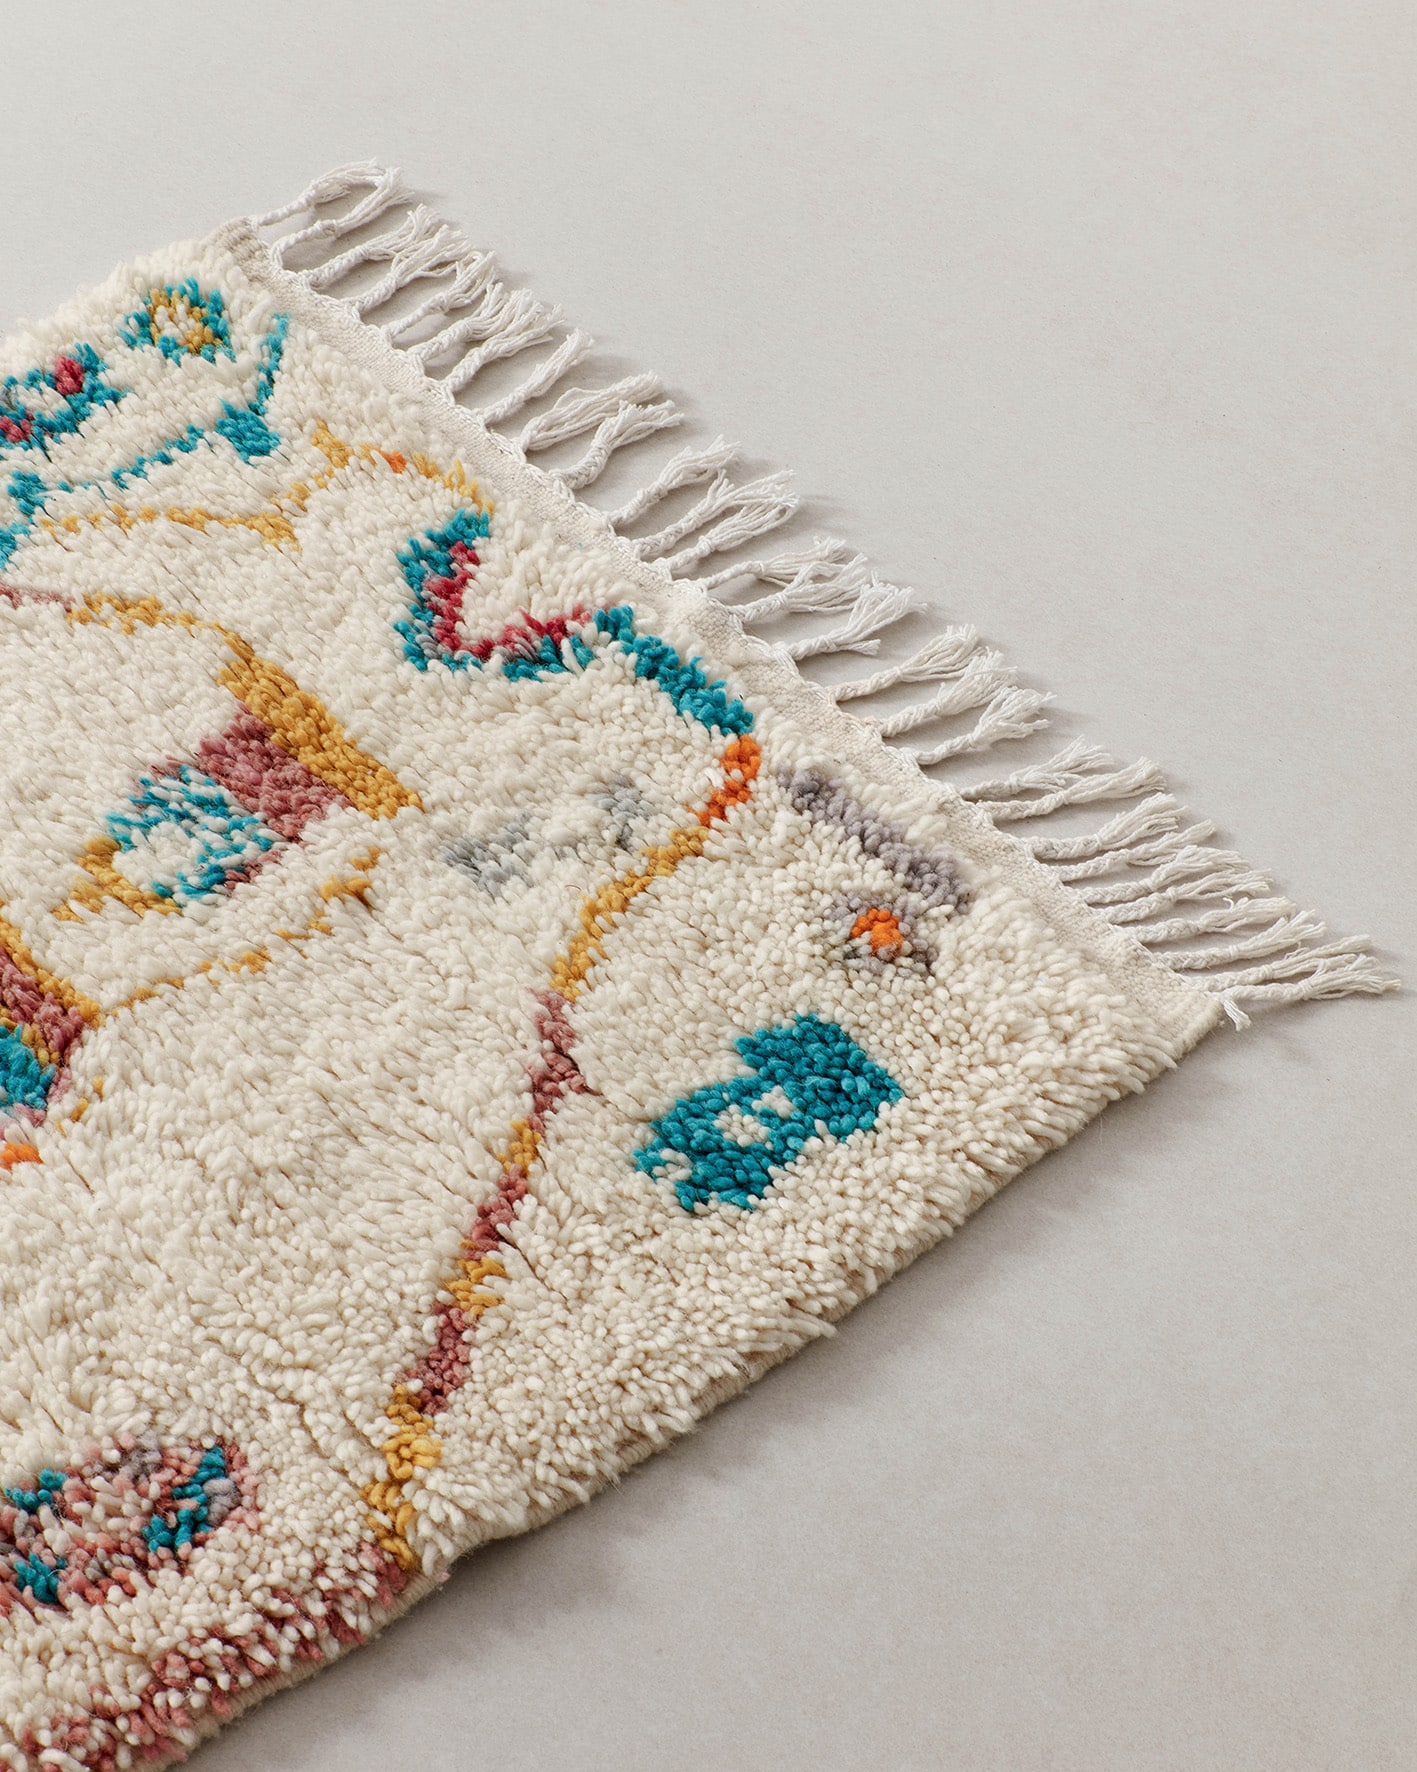 Tiny rug with turquoise motifs, fringe